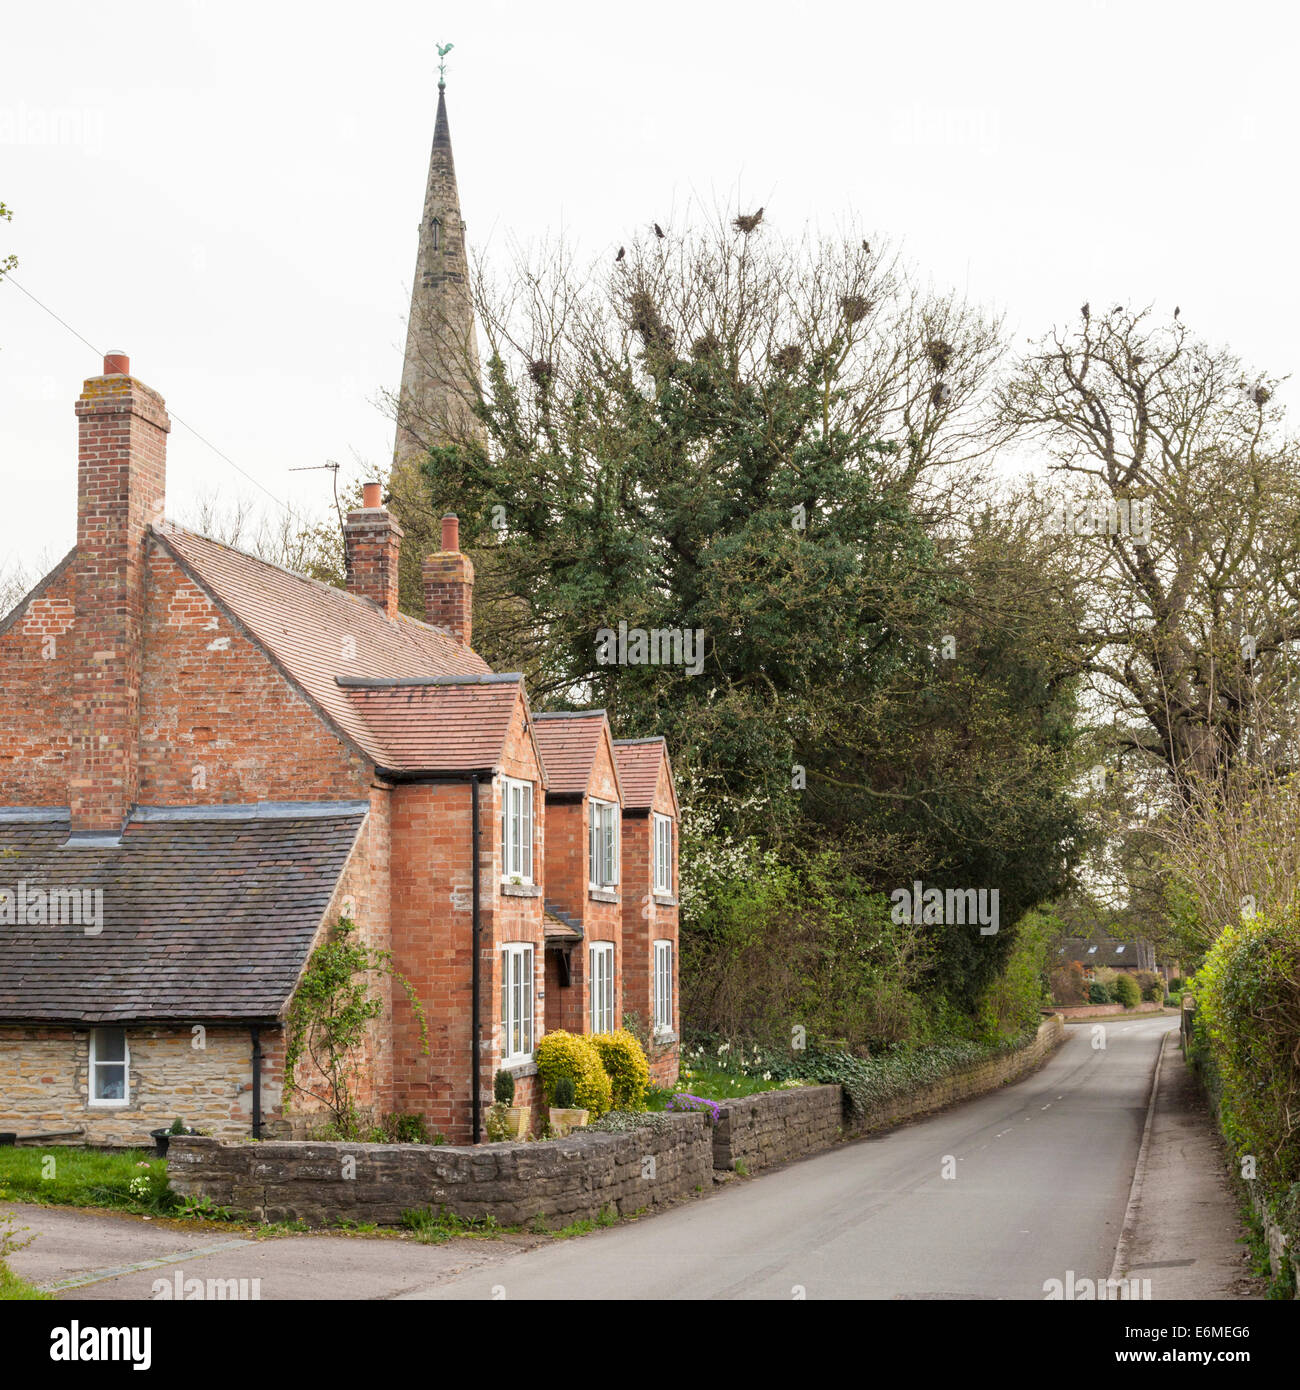 Le village rural de Colston Bassett, Lancashire, England, UK Banque D'Images